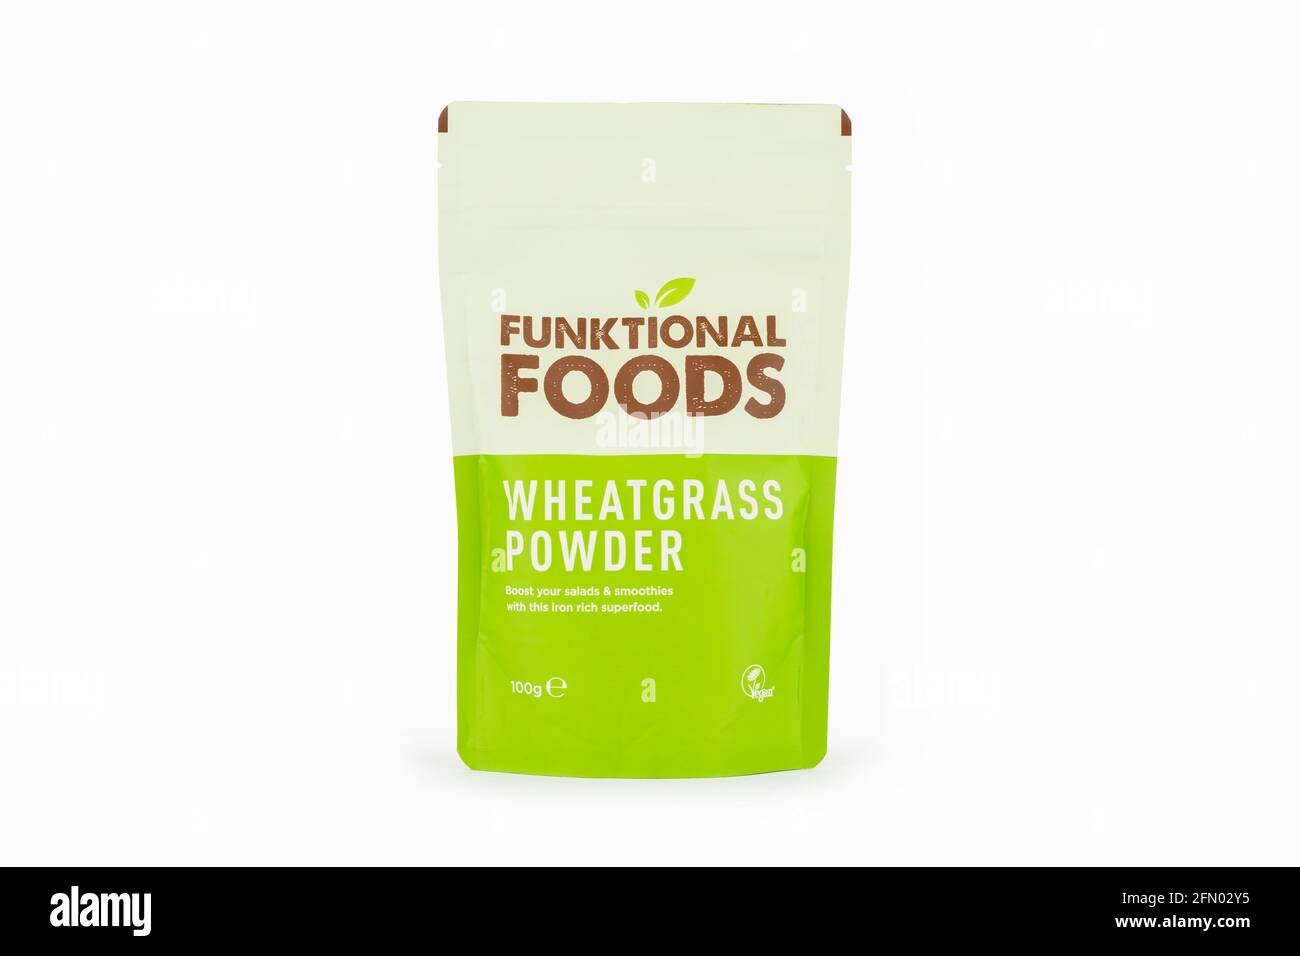 Ein Paket von Functional Foods Weizengras-Pulver wurde auf weißem Hintergrund geschossen. Stockfoto